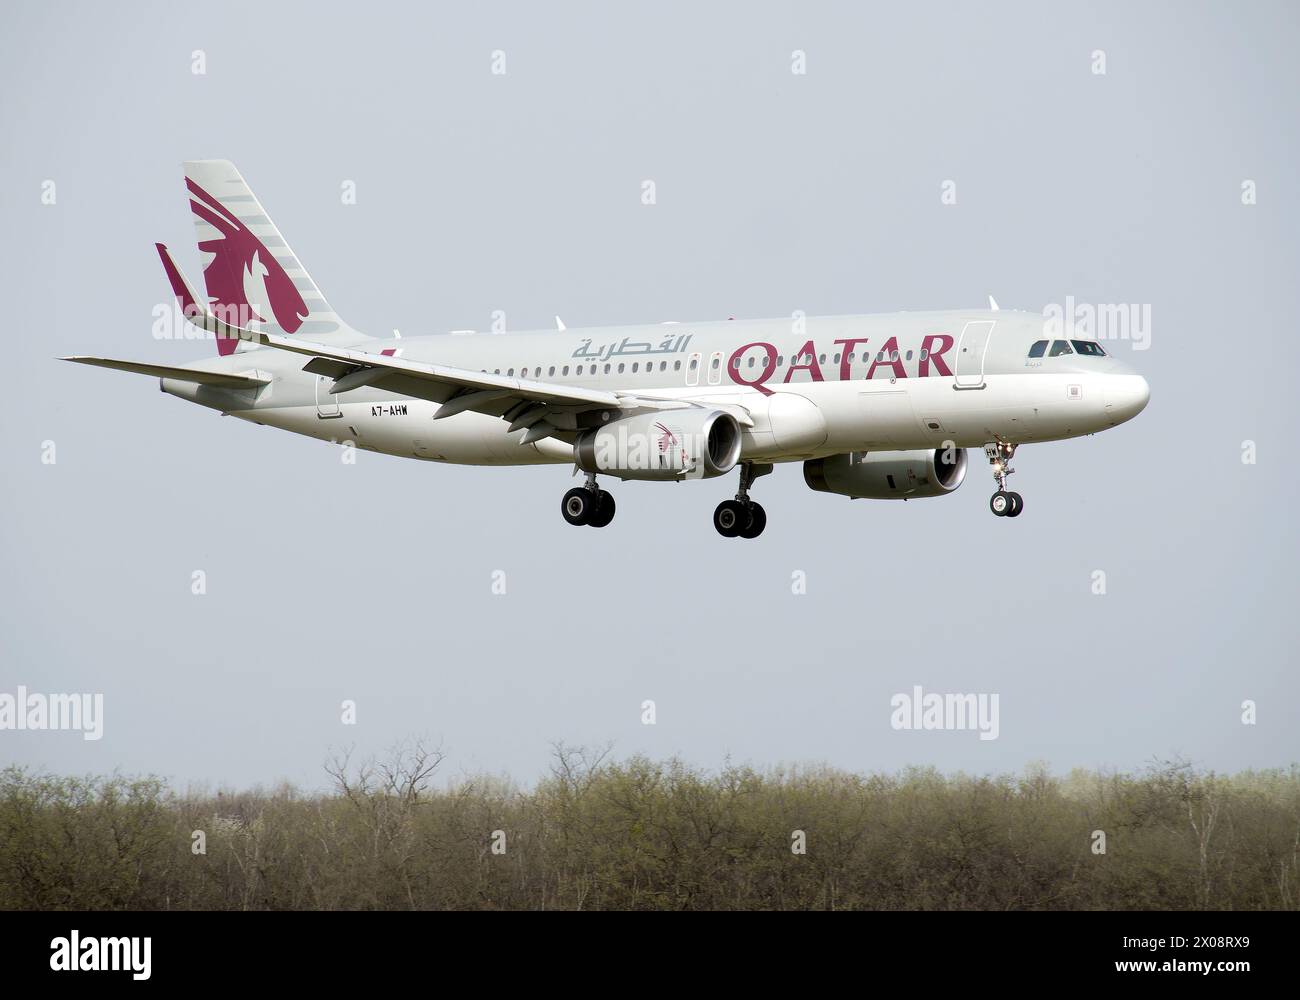 Qatar Airways (es la aerolínea estatal de bandera de Qatar), Airbus A320-232, Cargo hill, Budapest, Hungría, Magyarország, Europa Foto de stock